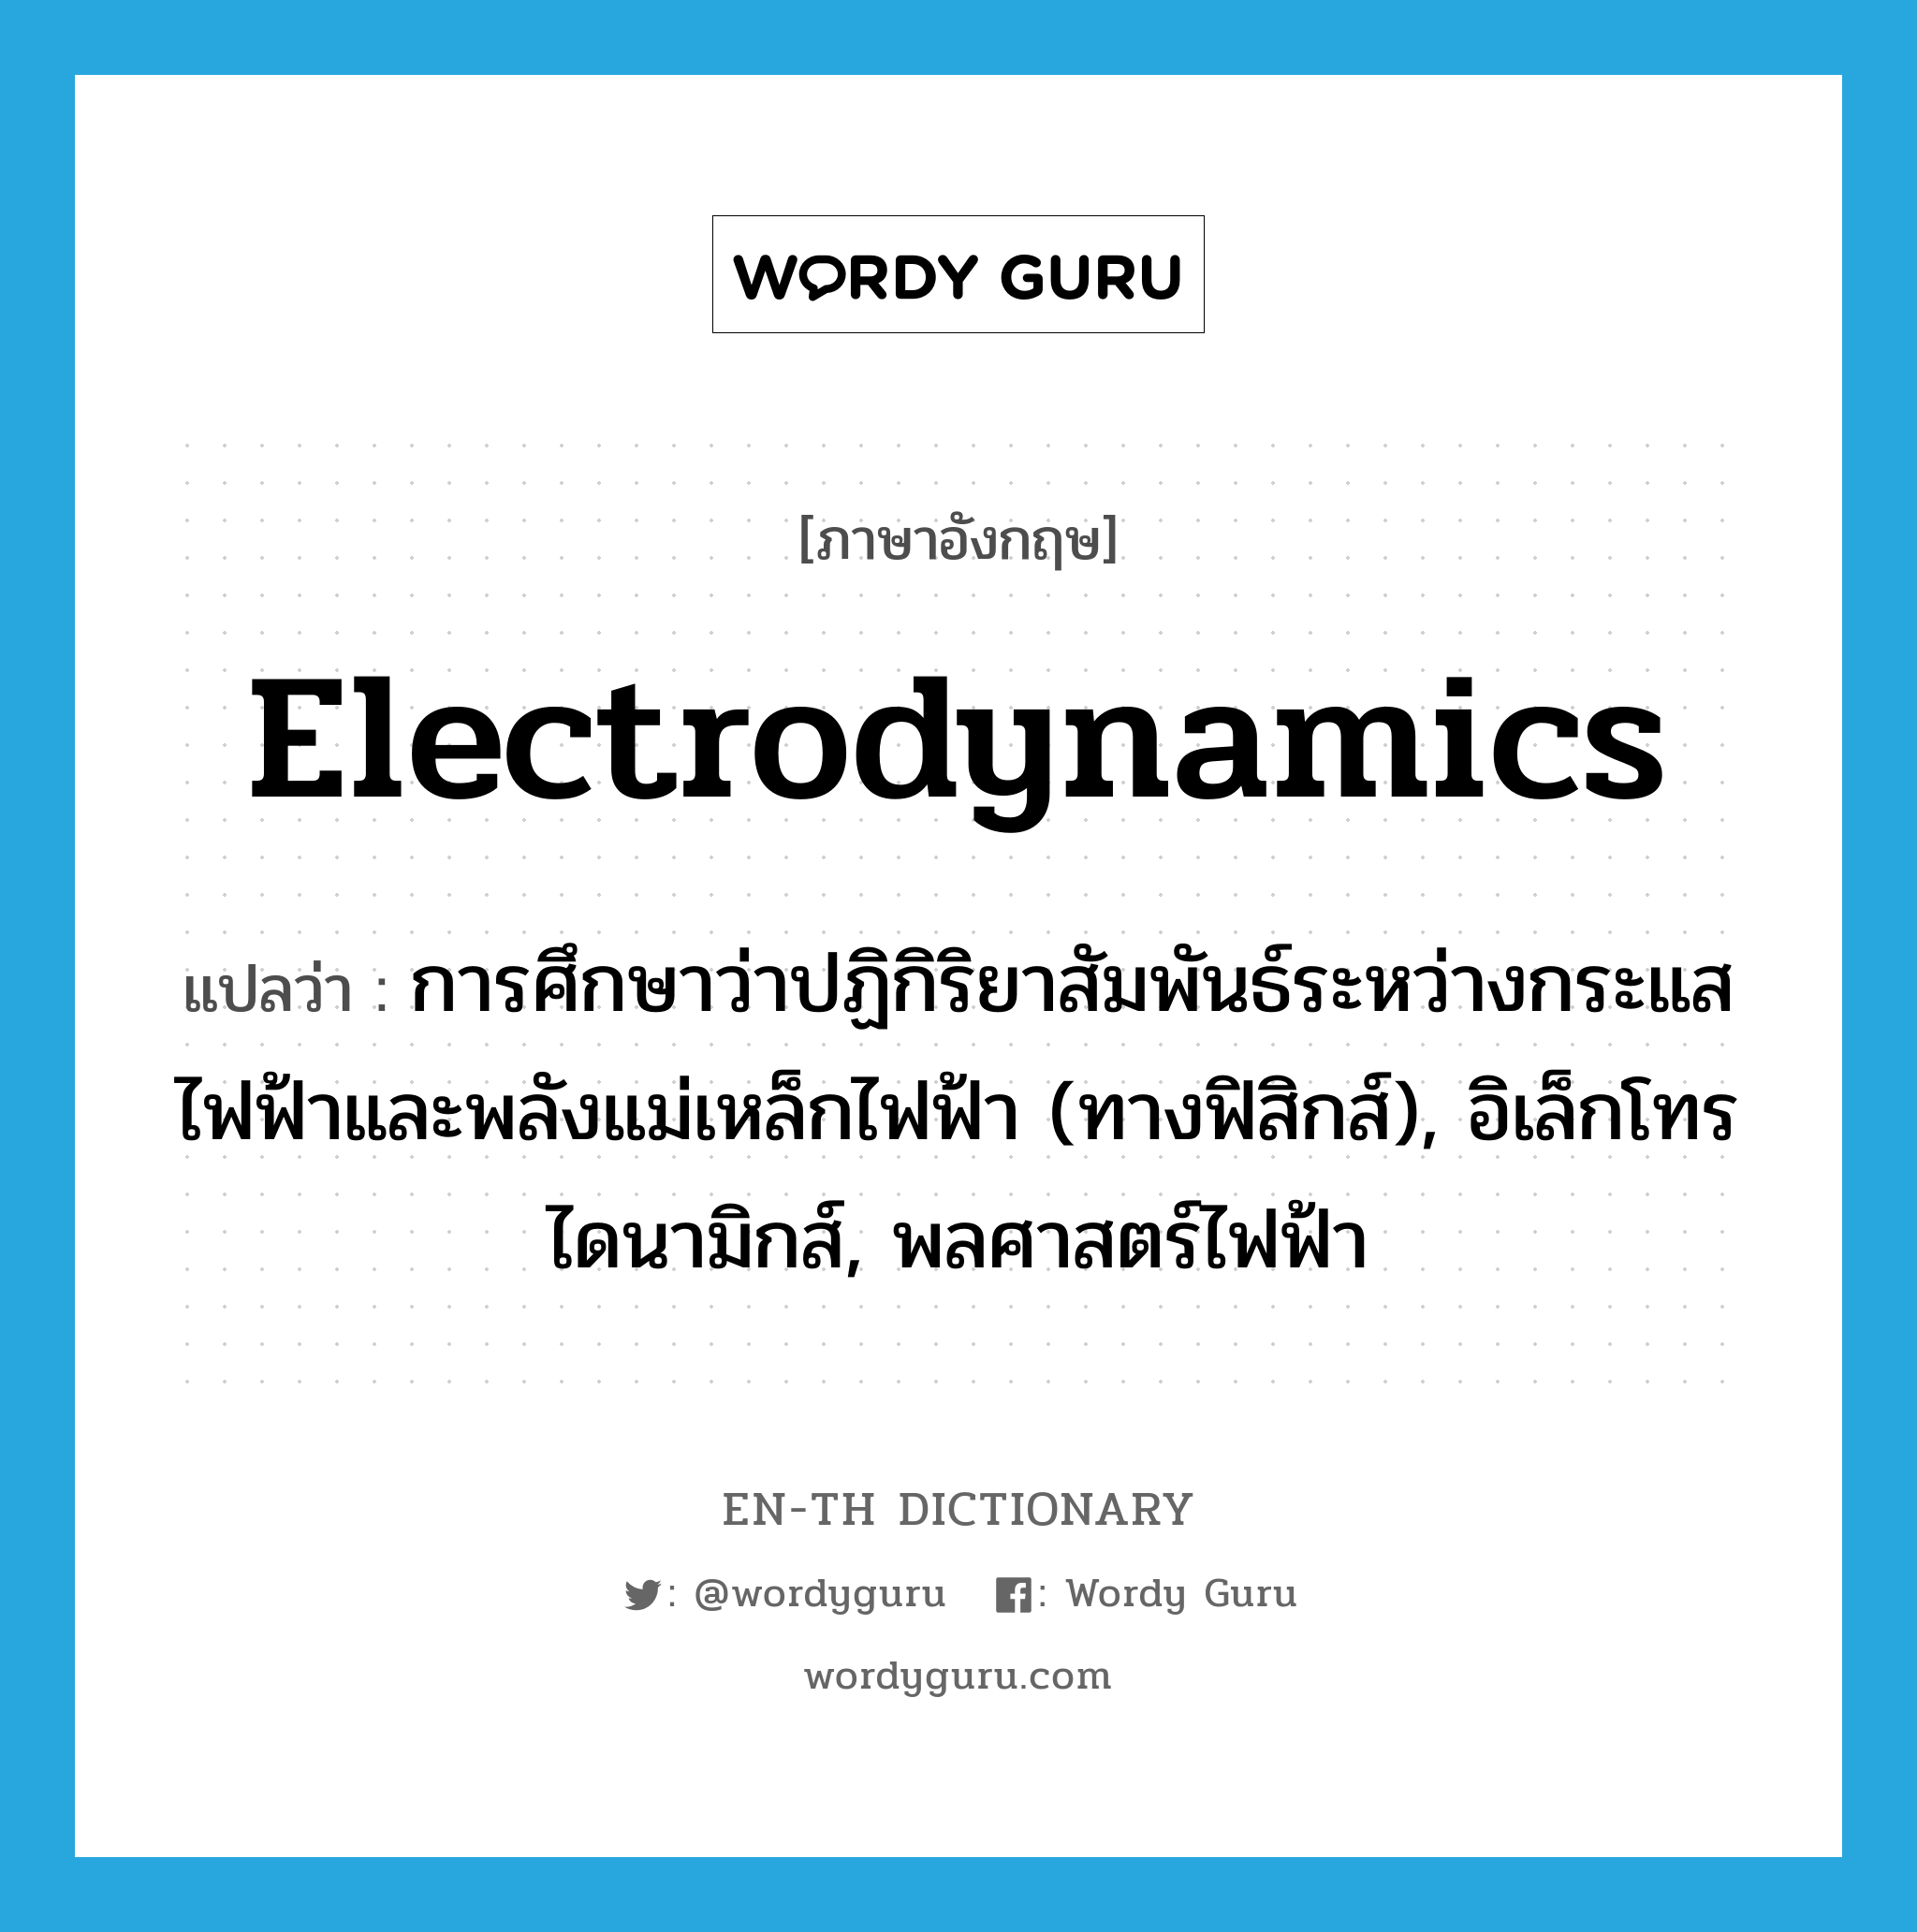 electrodynamics แปลว่า?, คำศัพท์ภาษาอังกฤษ electrodynamics แปลว่า การศึกษาว่าปฏิกิริยาสัมพันธ์ระหว่างกระแสไฟฟ้าและพลังแม่เหล็กไฟฟ้า (ทางฟิสิกส์), อิเล็กโทรไดนามิกส์, พลศาสตร์ไฟฟ้า ประเภท N หมวด N